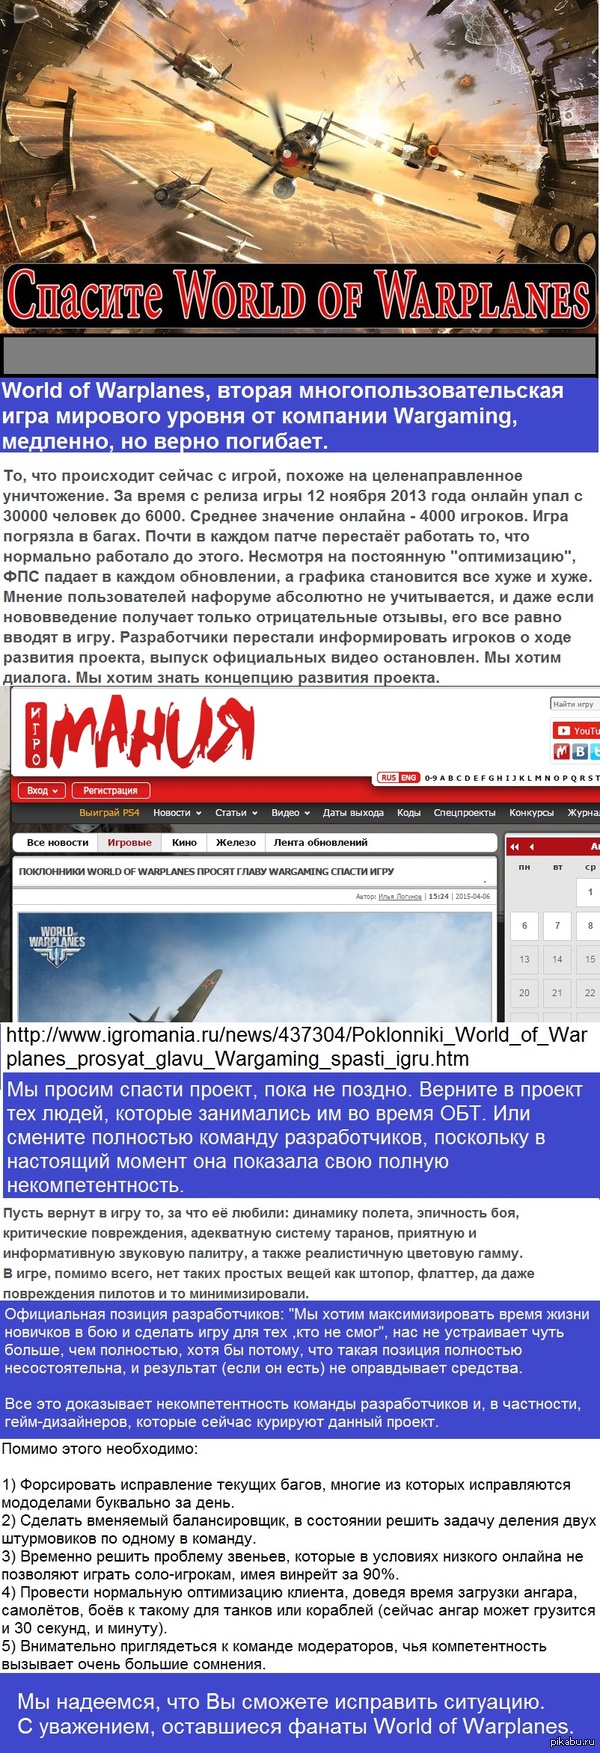     WOWP https://www.change.org/p/-wargaming-net----world-of-warplanes-wargaming-net